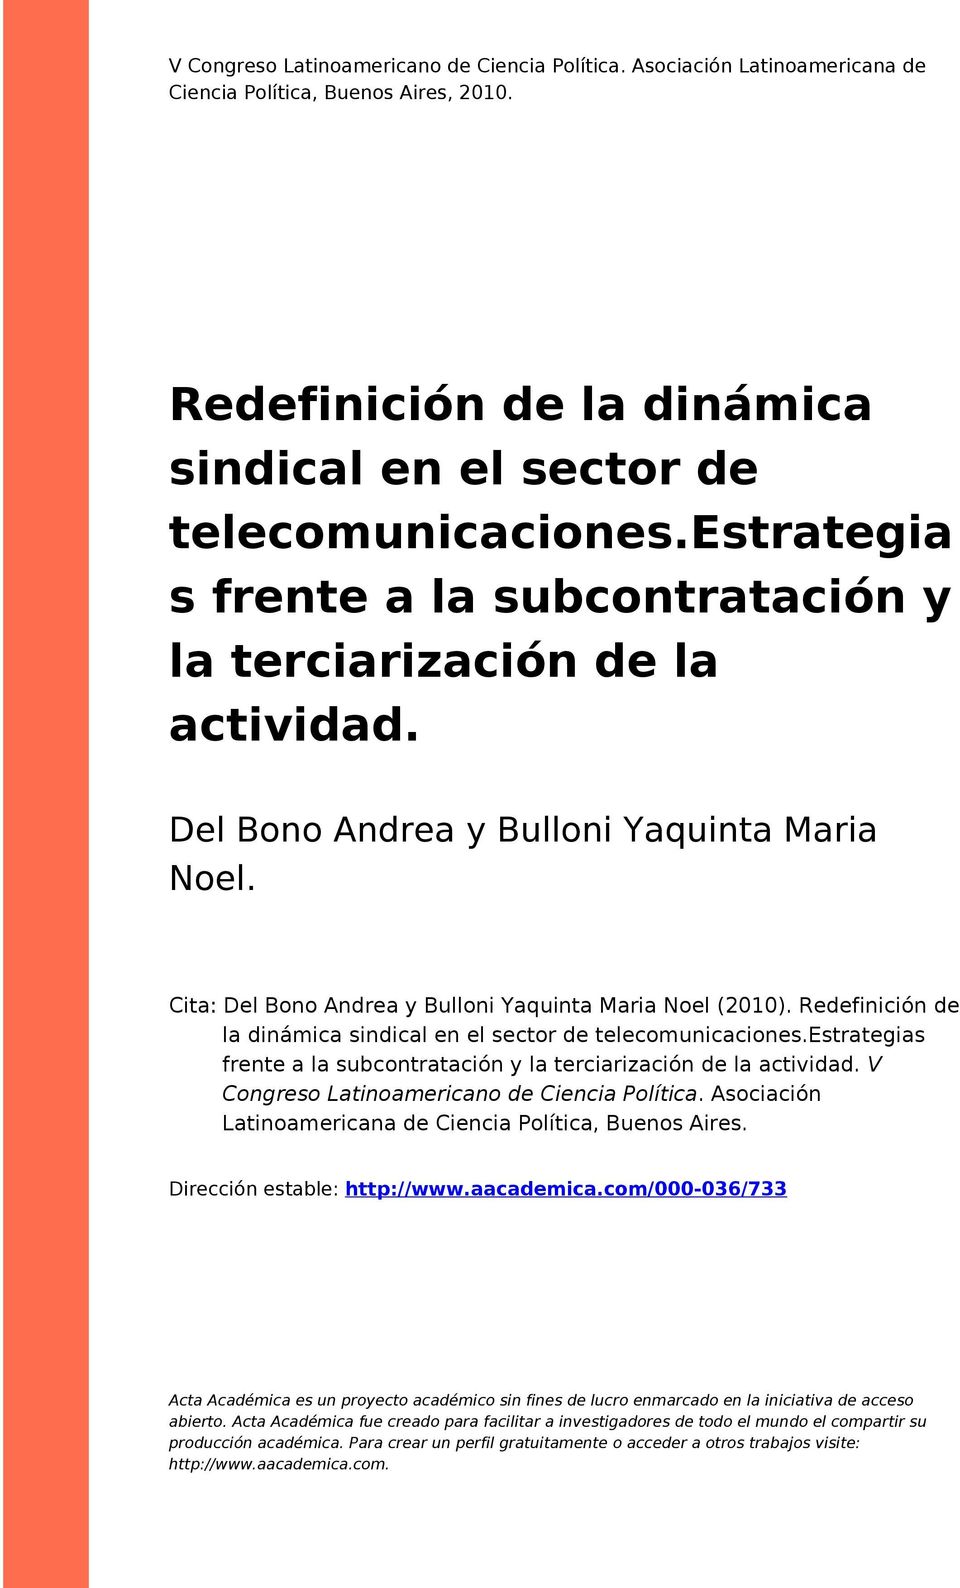 Redefinición de la dinámica sindical en el sector de telecomunicaciones.estrategias frente a la subcontratación y la terciarización de la actividad. V Congreso Latinoamericano de Ciencia Política.